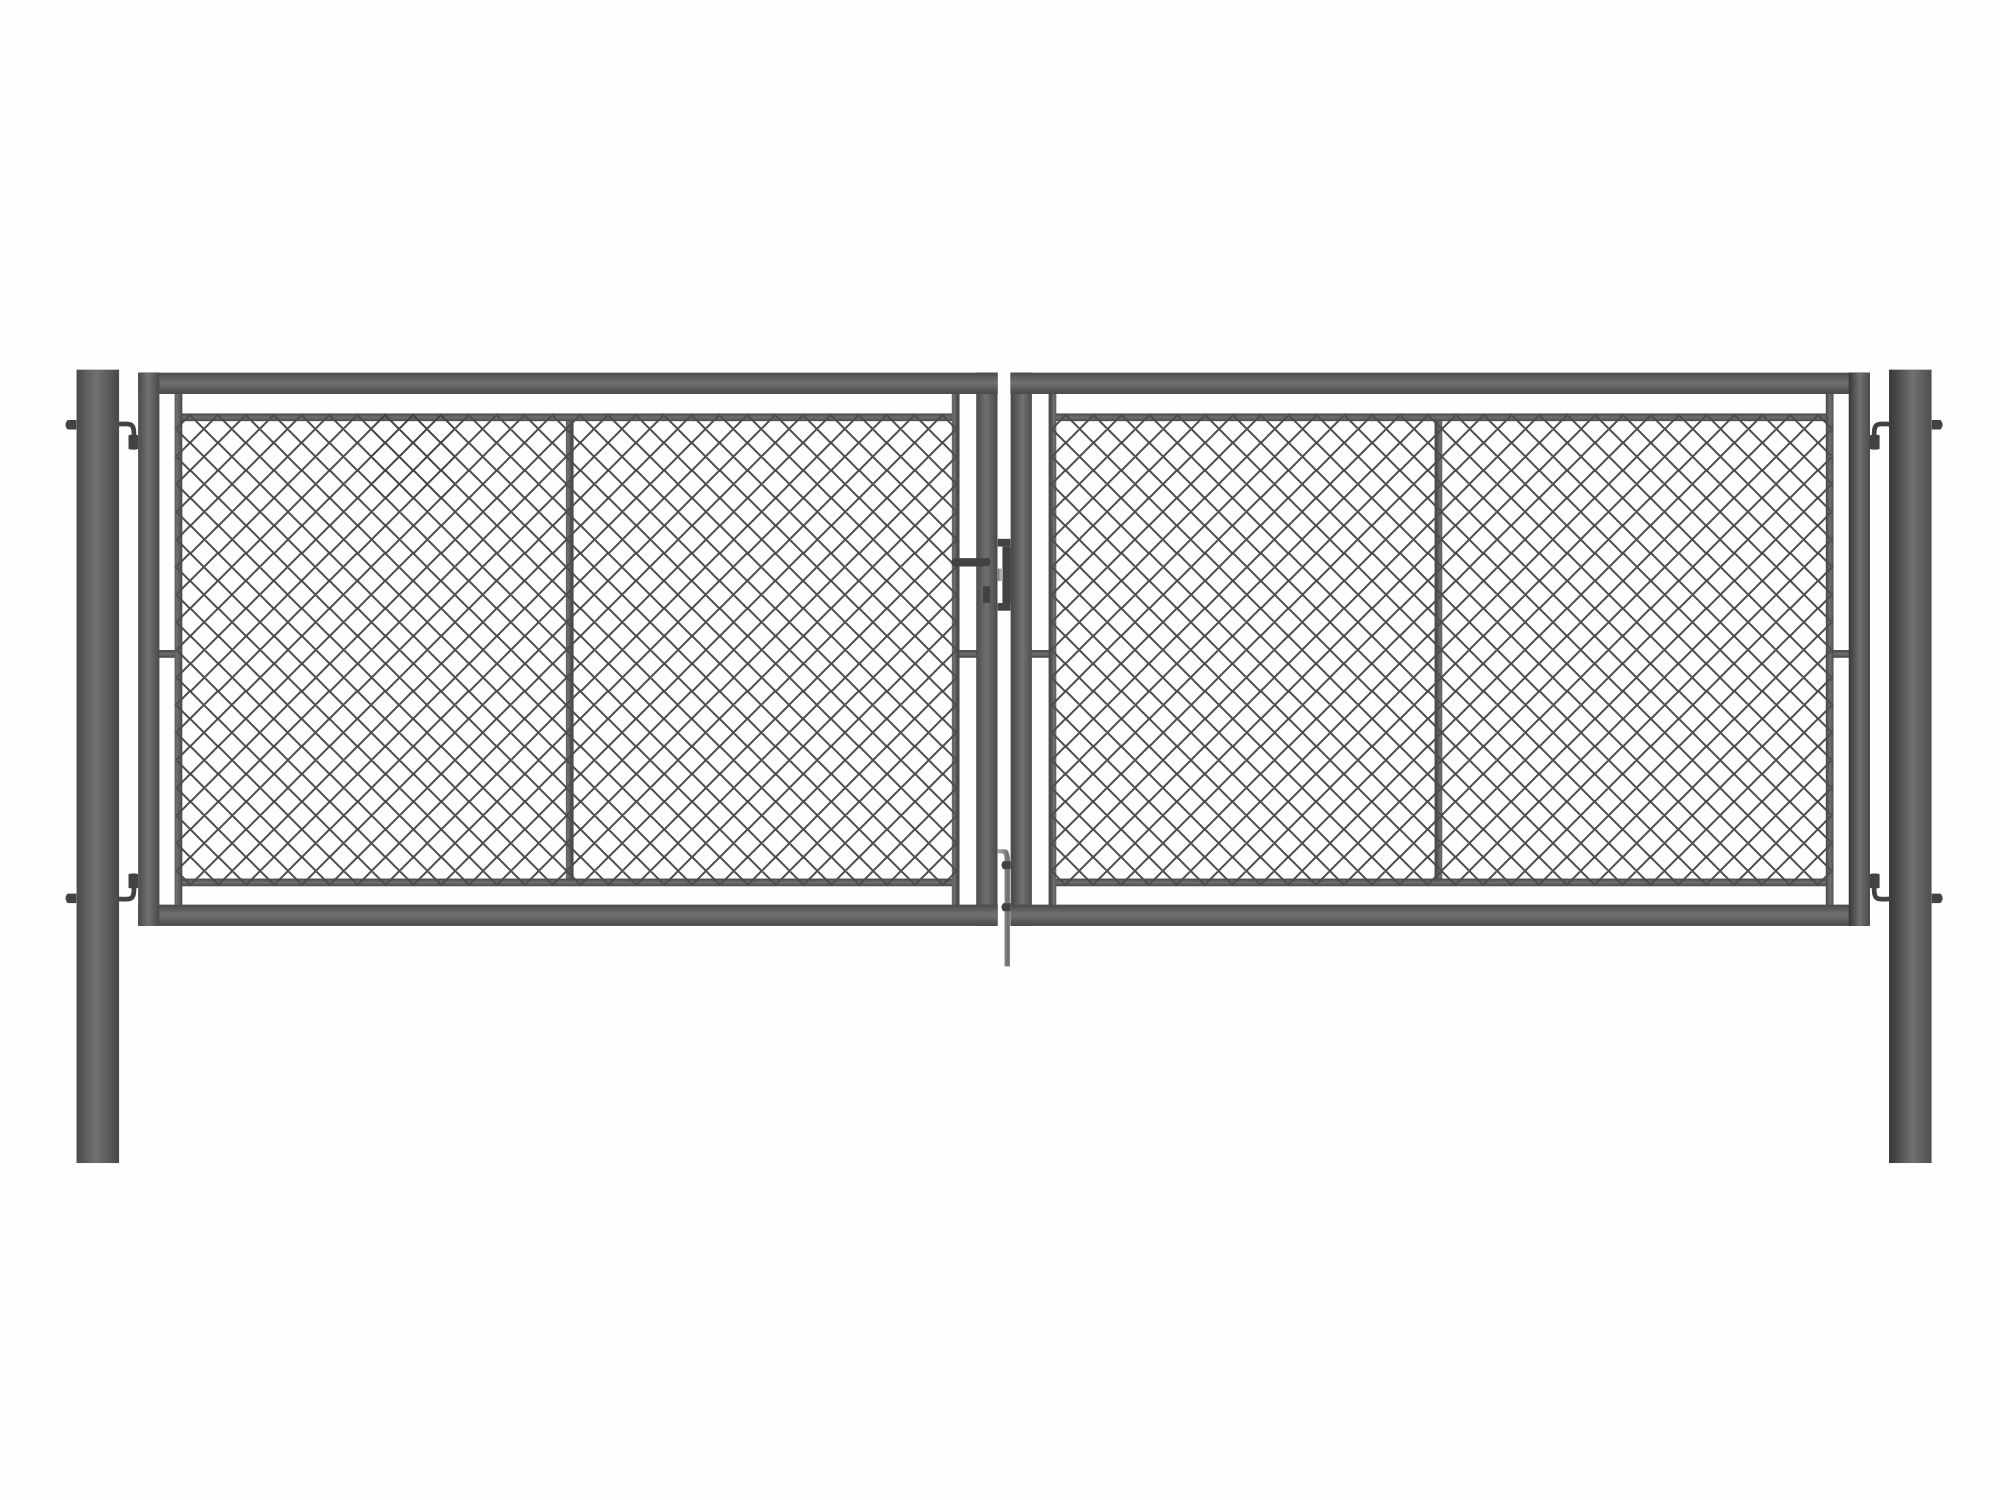 Brána zahradní dvoukřídlá antracit, výška 145 x 400 cm, FAB, s výplní klasického pletiva